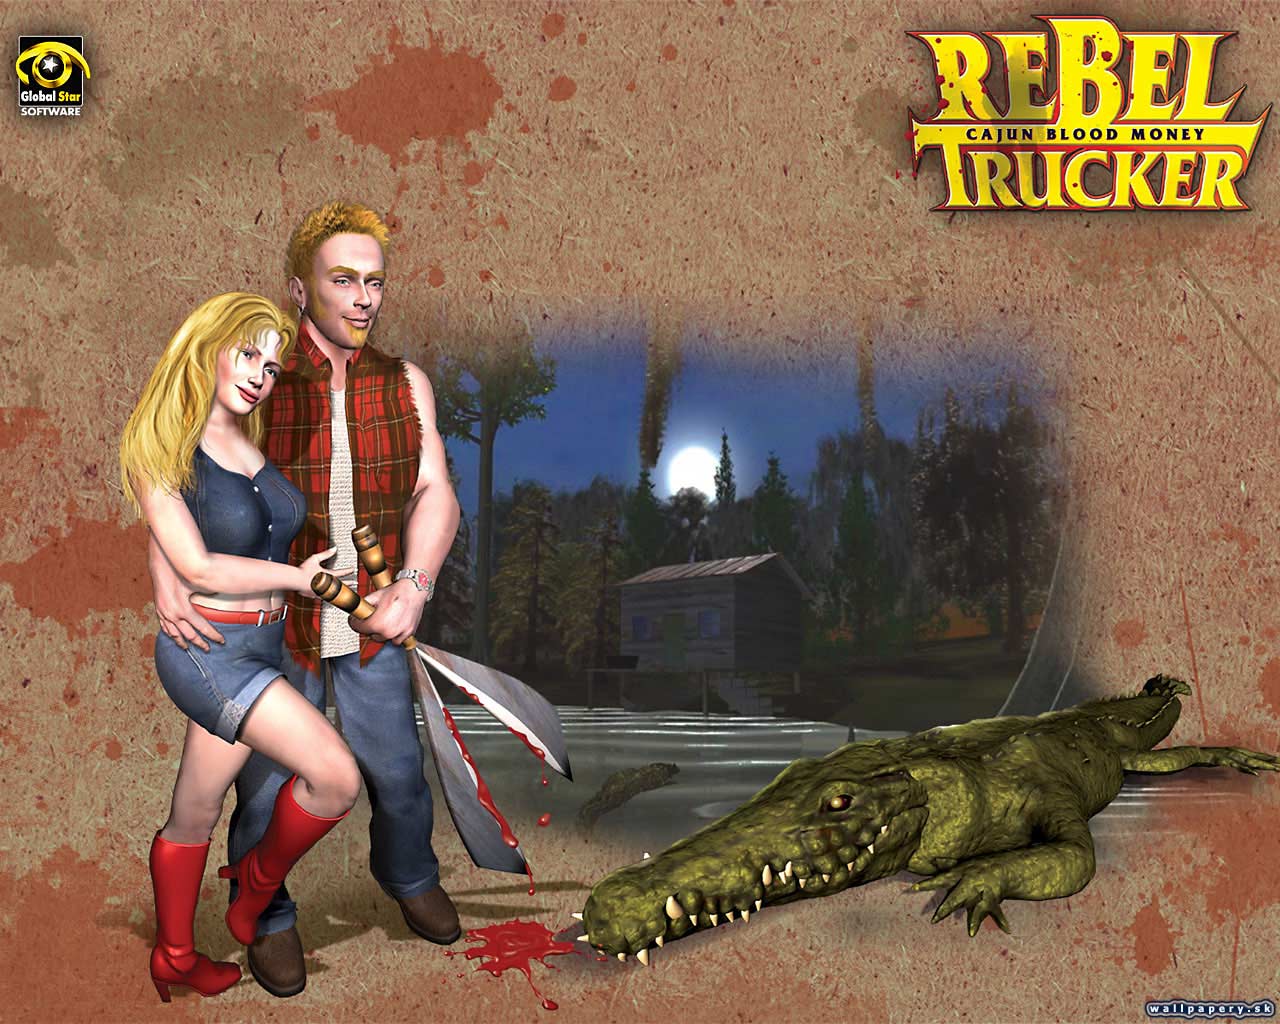 Rebel Trucker: Cajun Blood Money - wallpaper 3